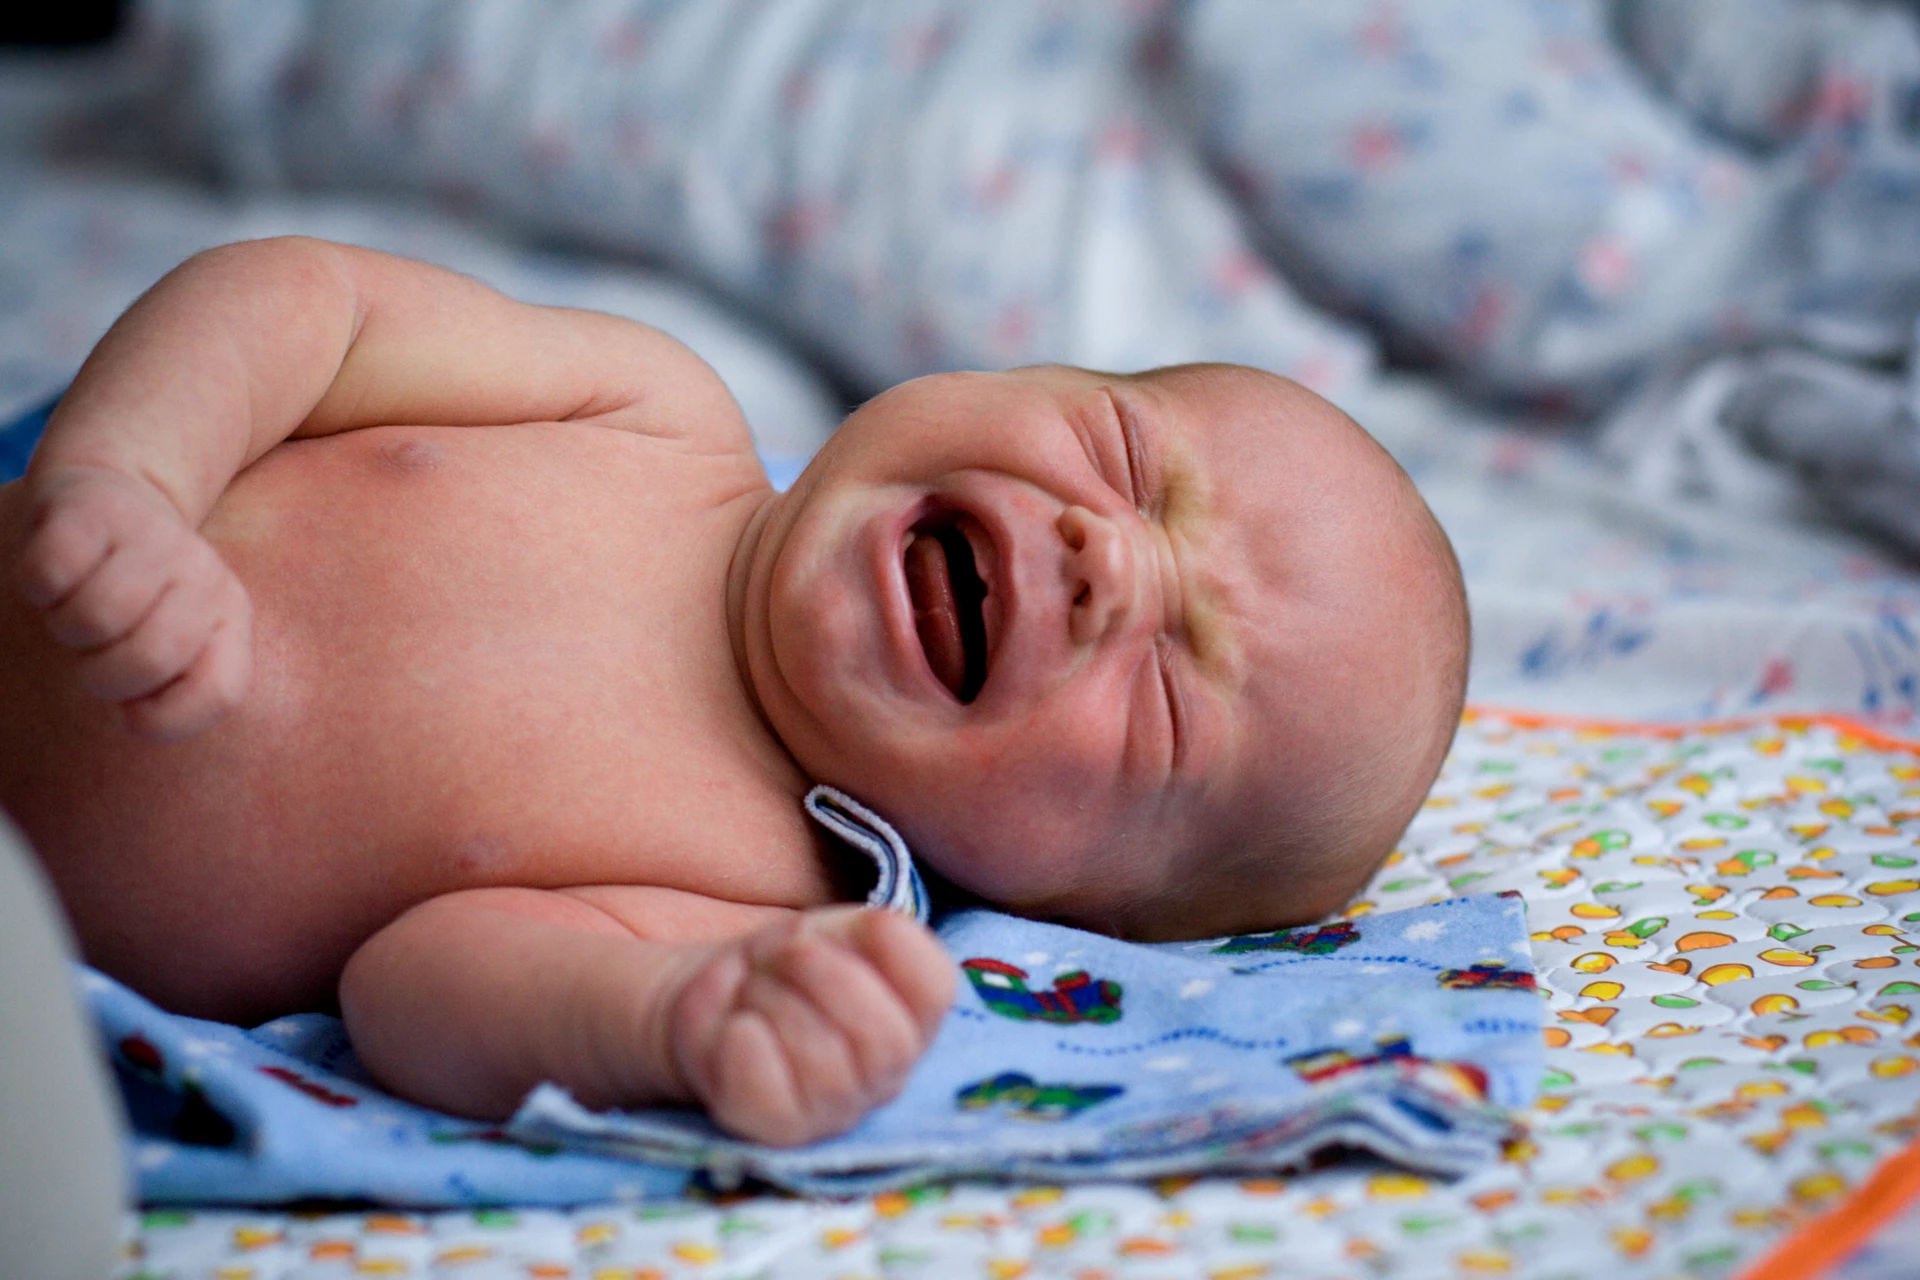 Newborn baby crying